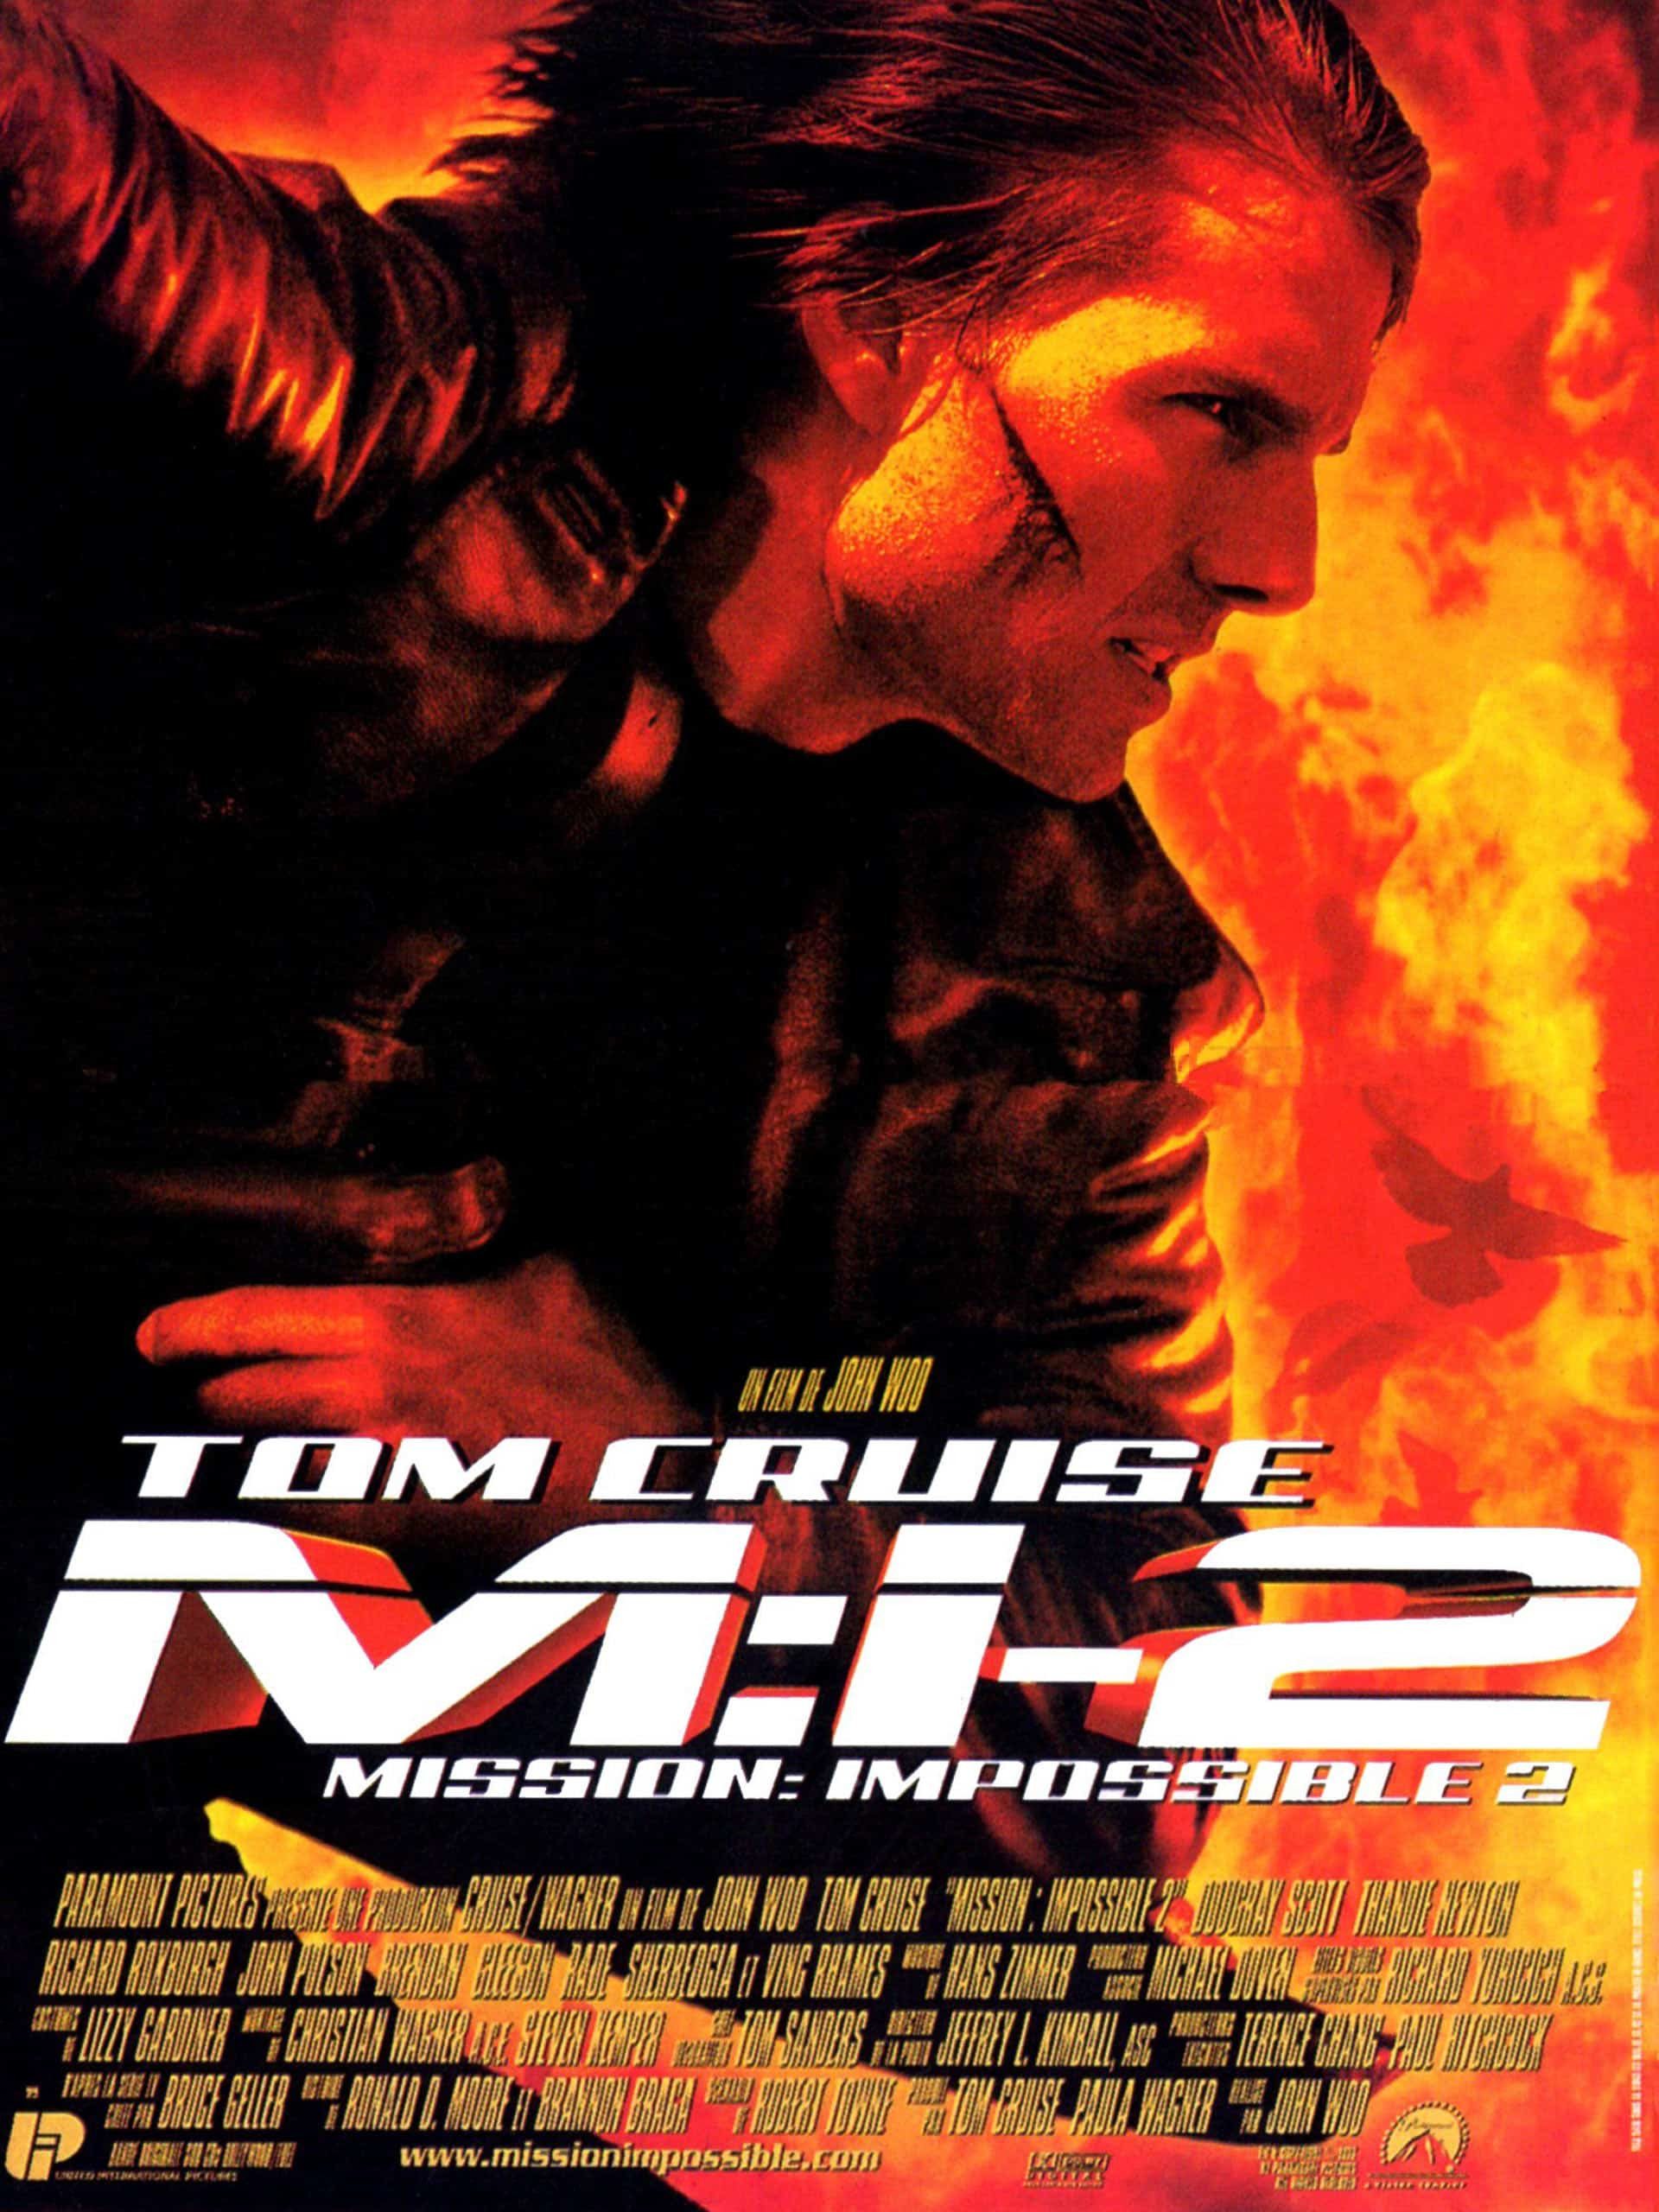 หนังน่าดู : Mission: Impossible 2 มิชชั่น:อิมพอสซิเบิ้ล II